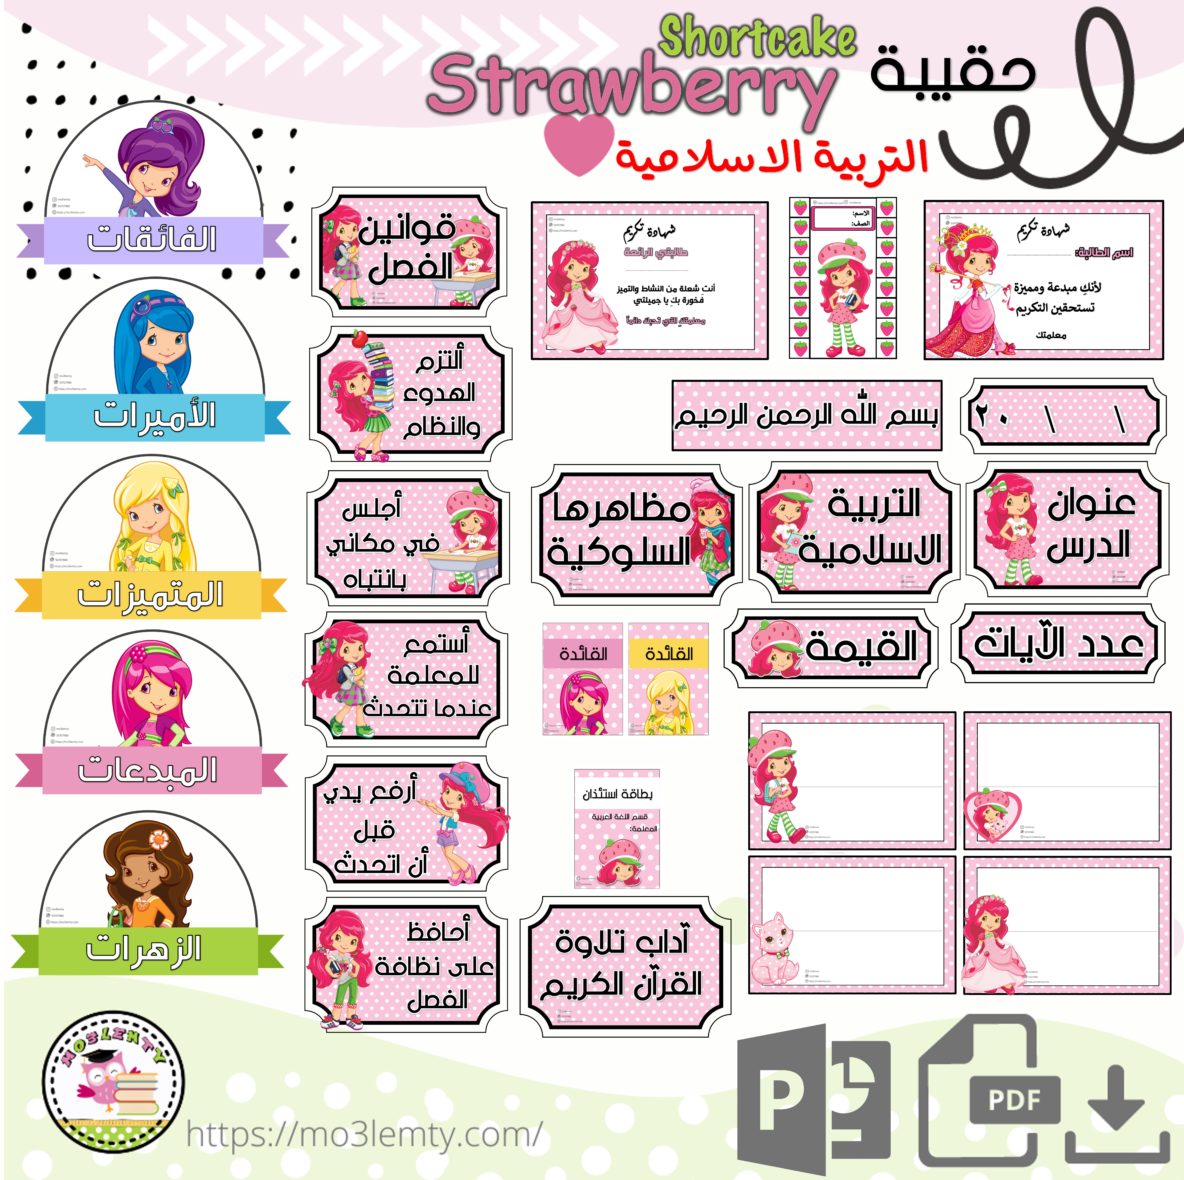 حقيبة التربية الاسلامية Strawberry shortcake